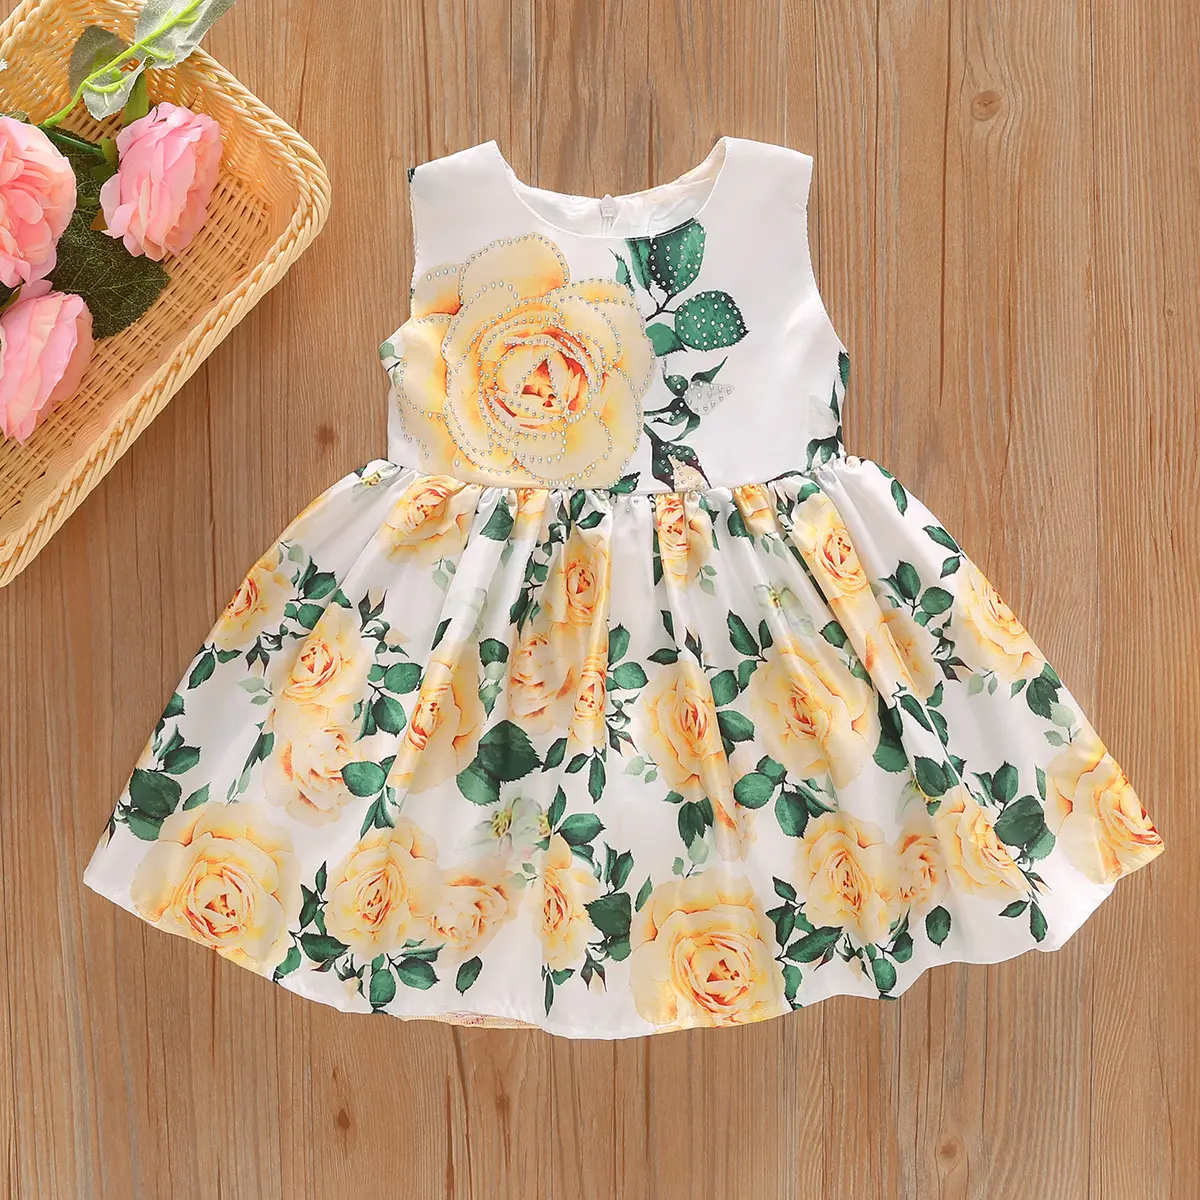 Shunying OEM Roupa De Menina en çok satan ürünler Customm tasarımcı güzel ve zarif saf renk çiçek kız çocuk elbiseleri